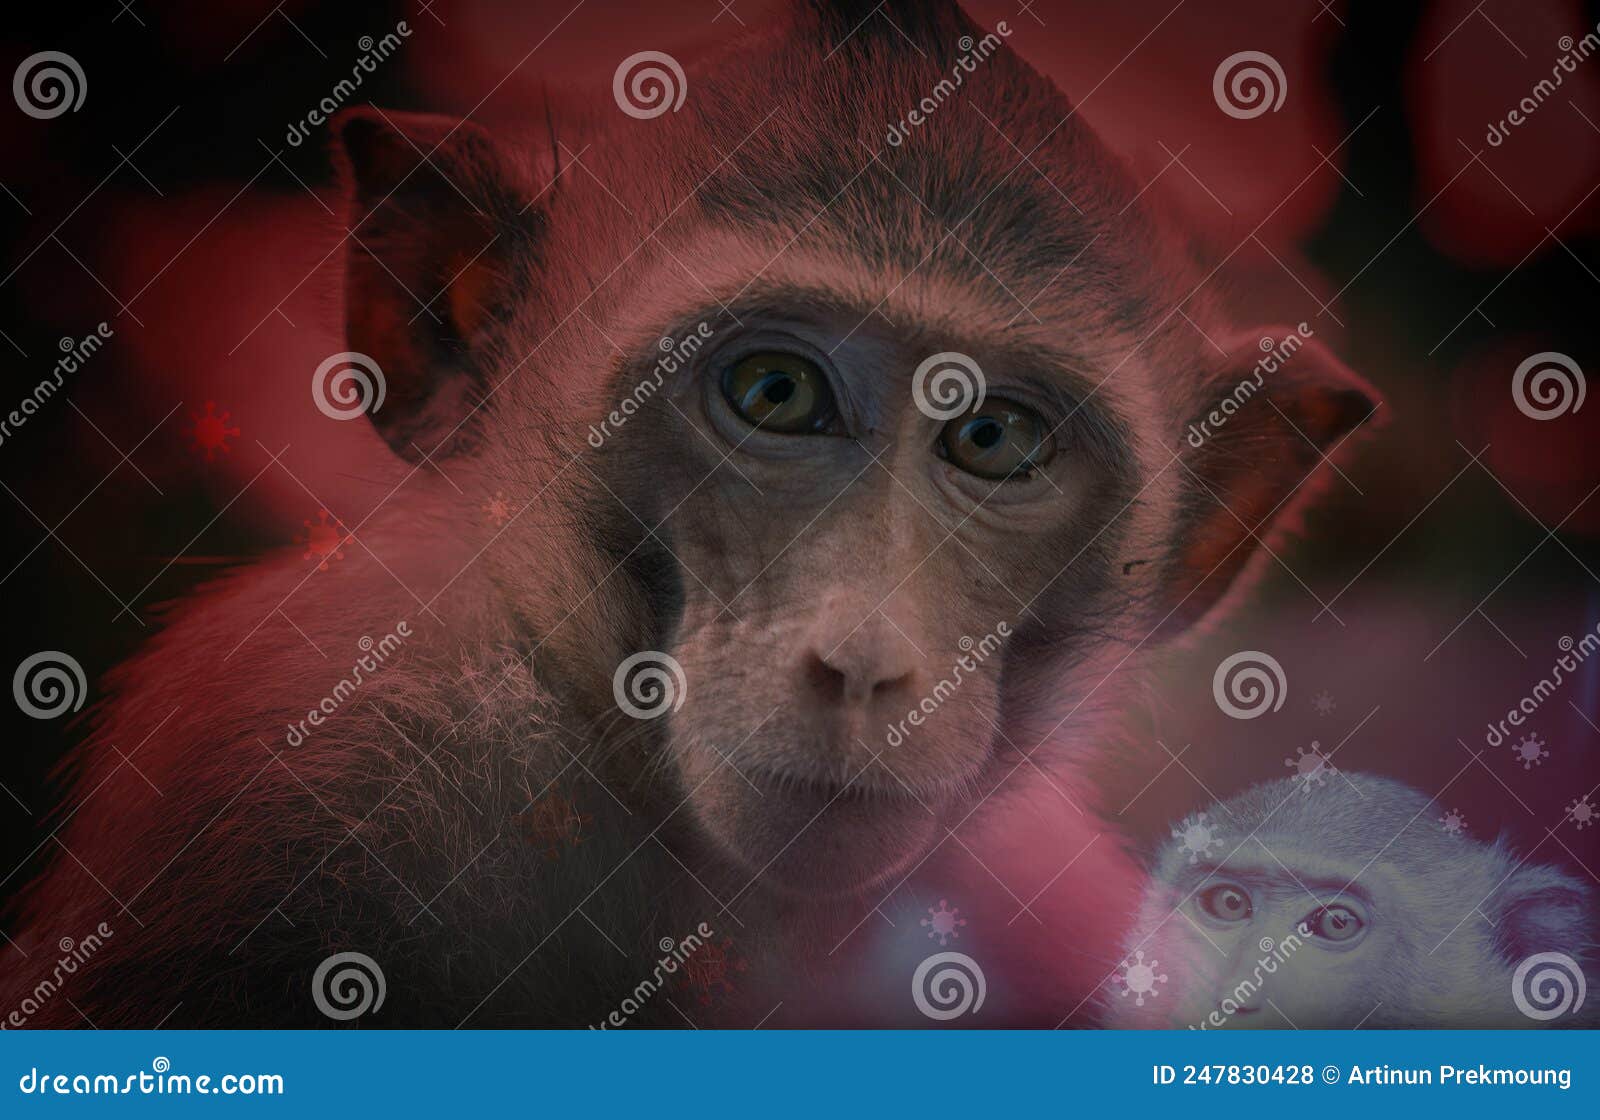 猴子妈妈素材-猴子妈妈图片-猴子妈妈素材图片下载-觅知网